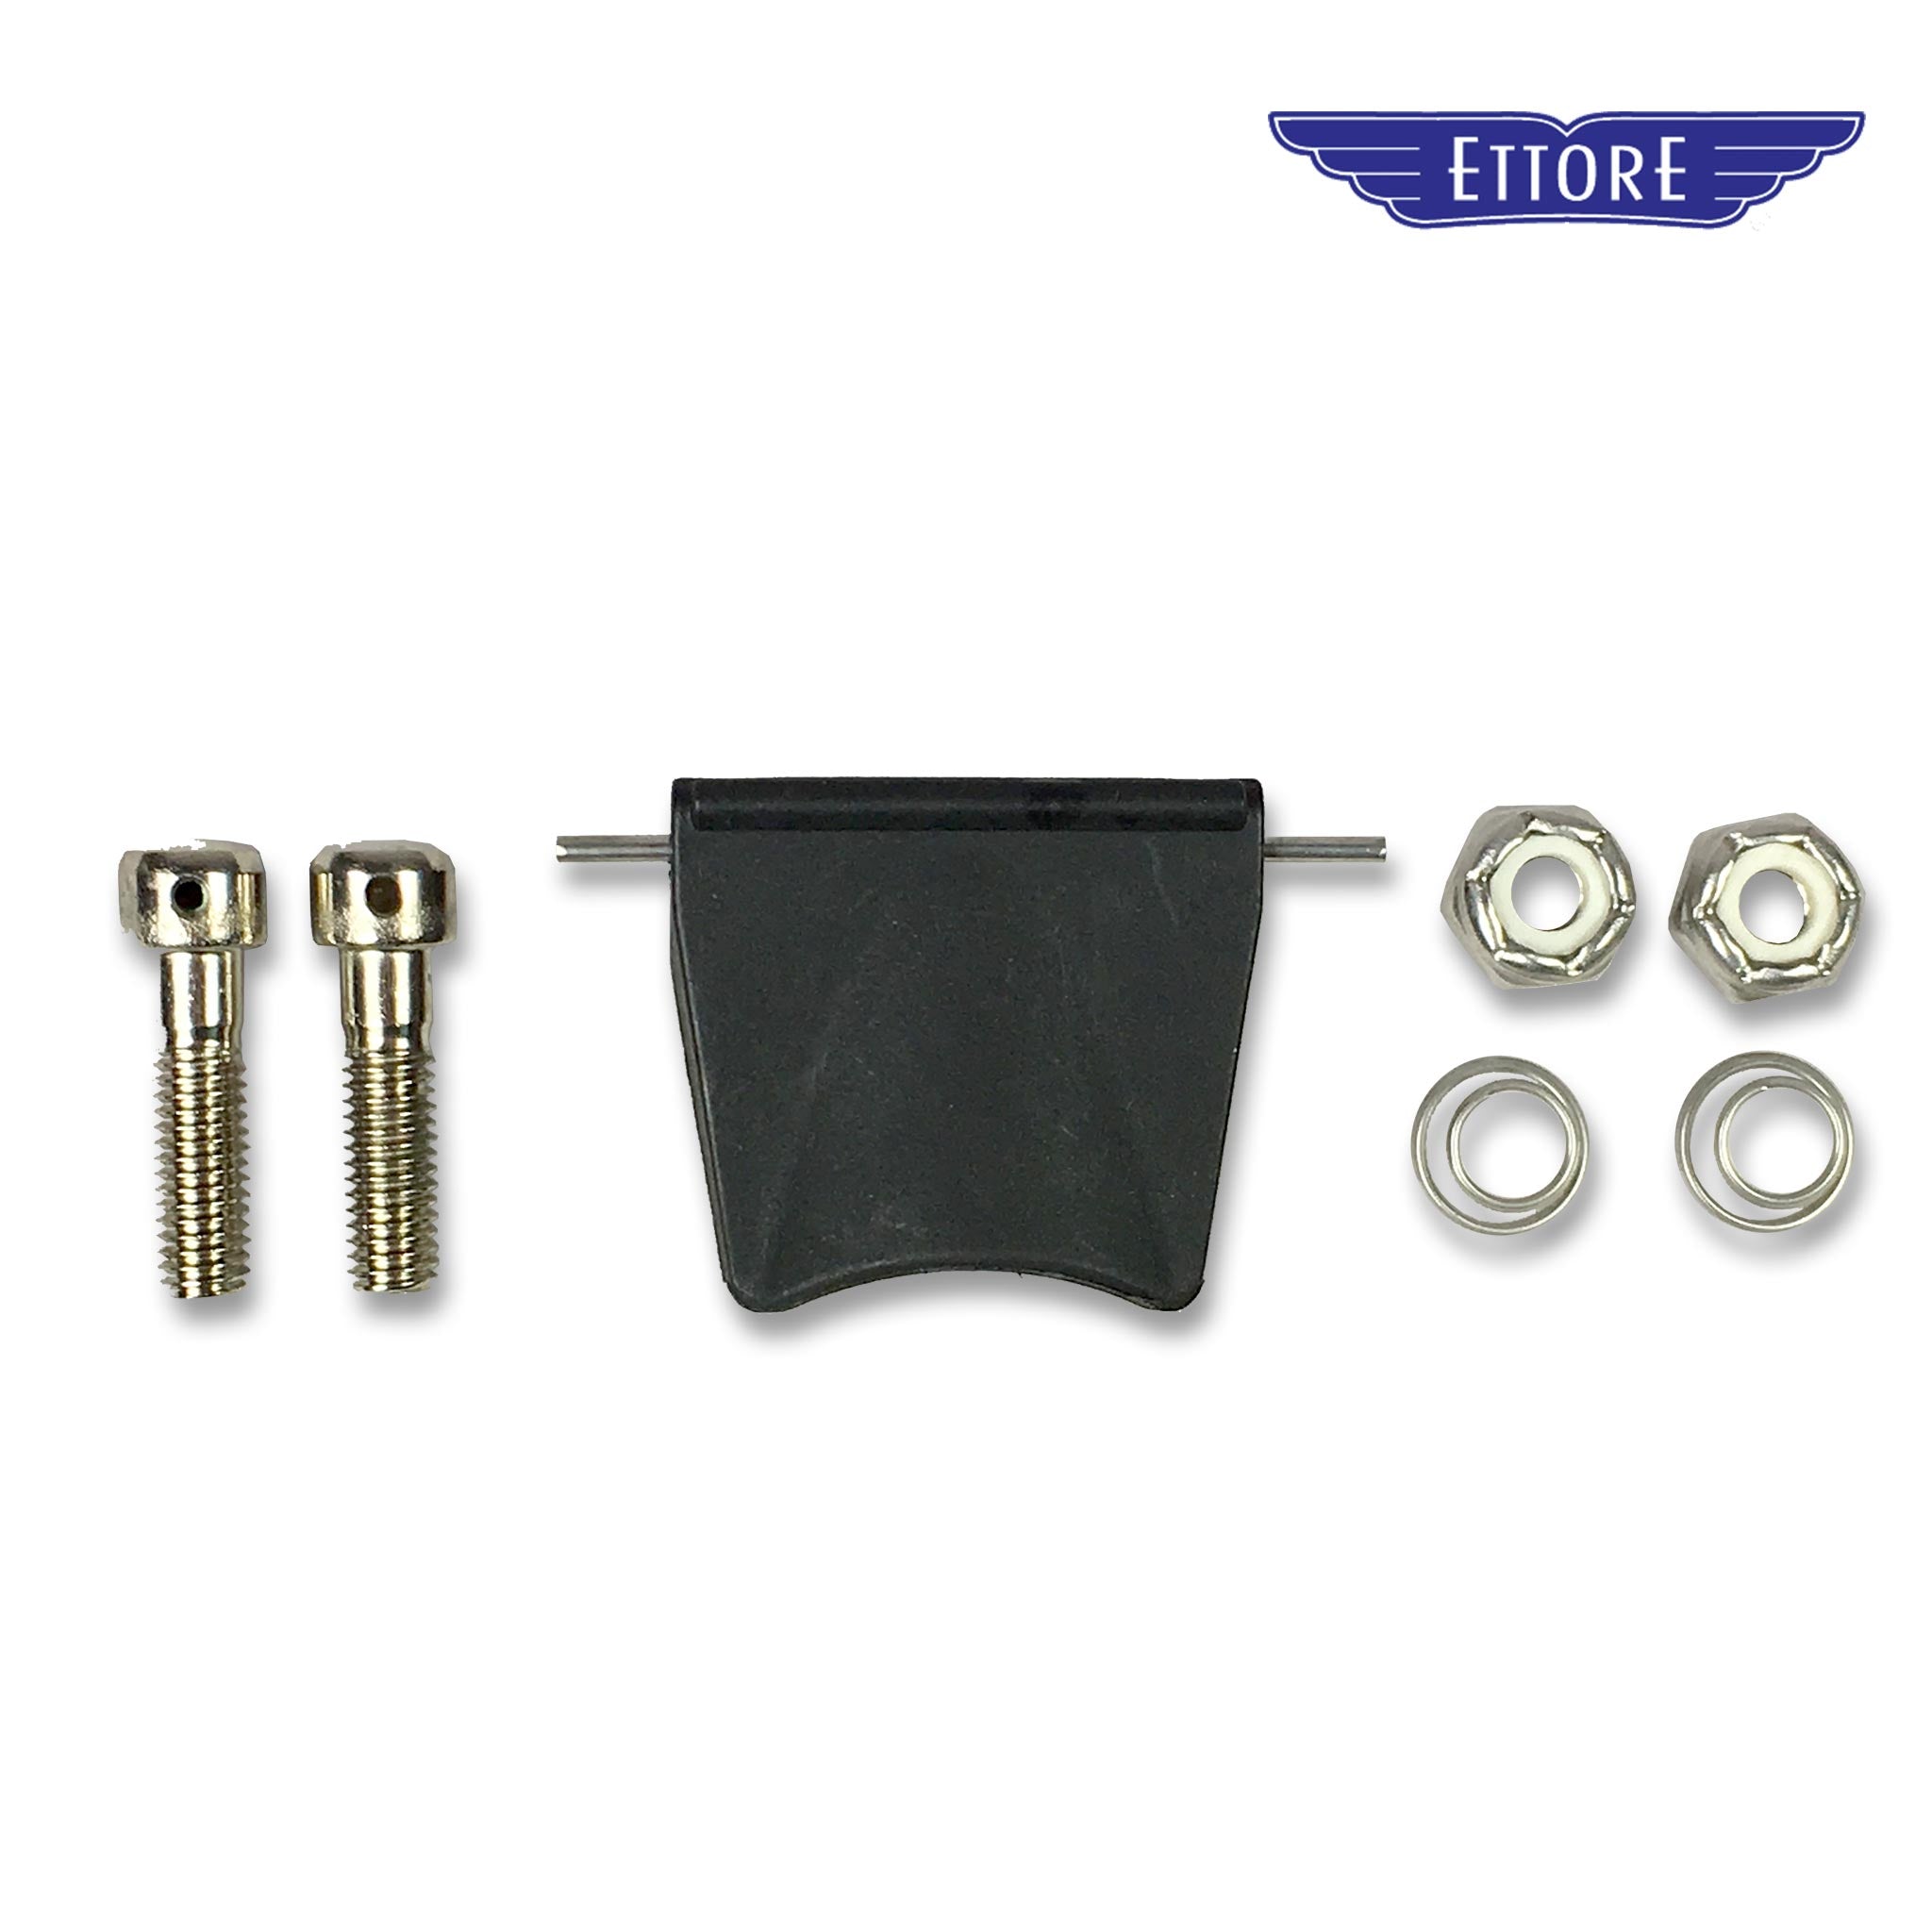 Ettore QR Handle Spares Kit